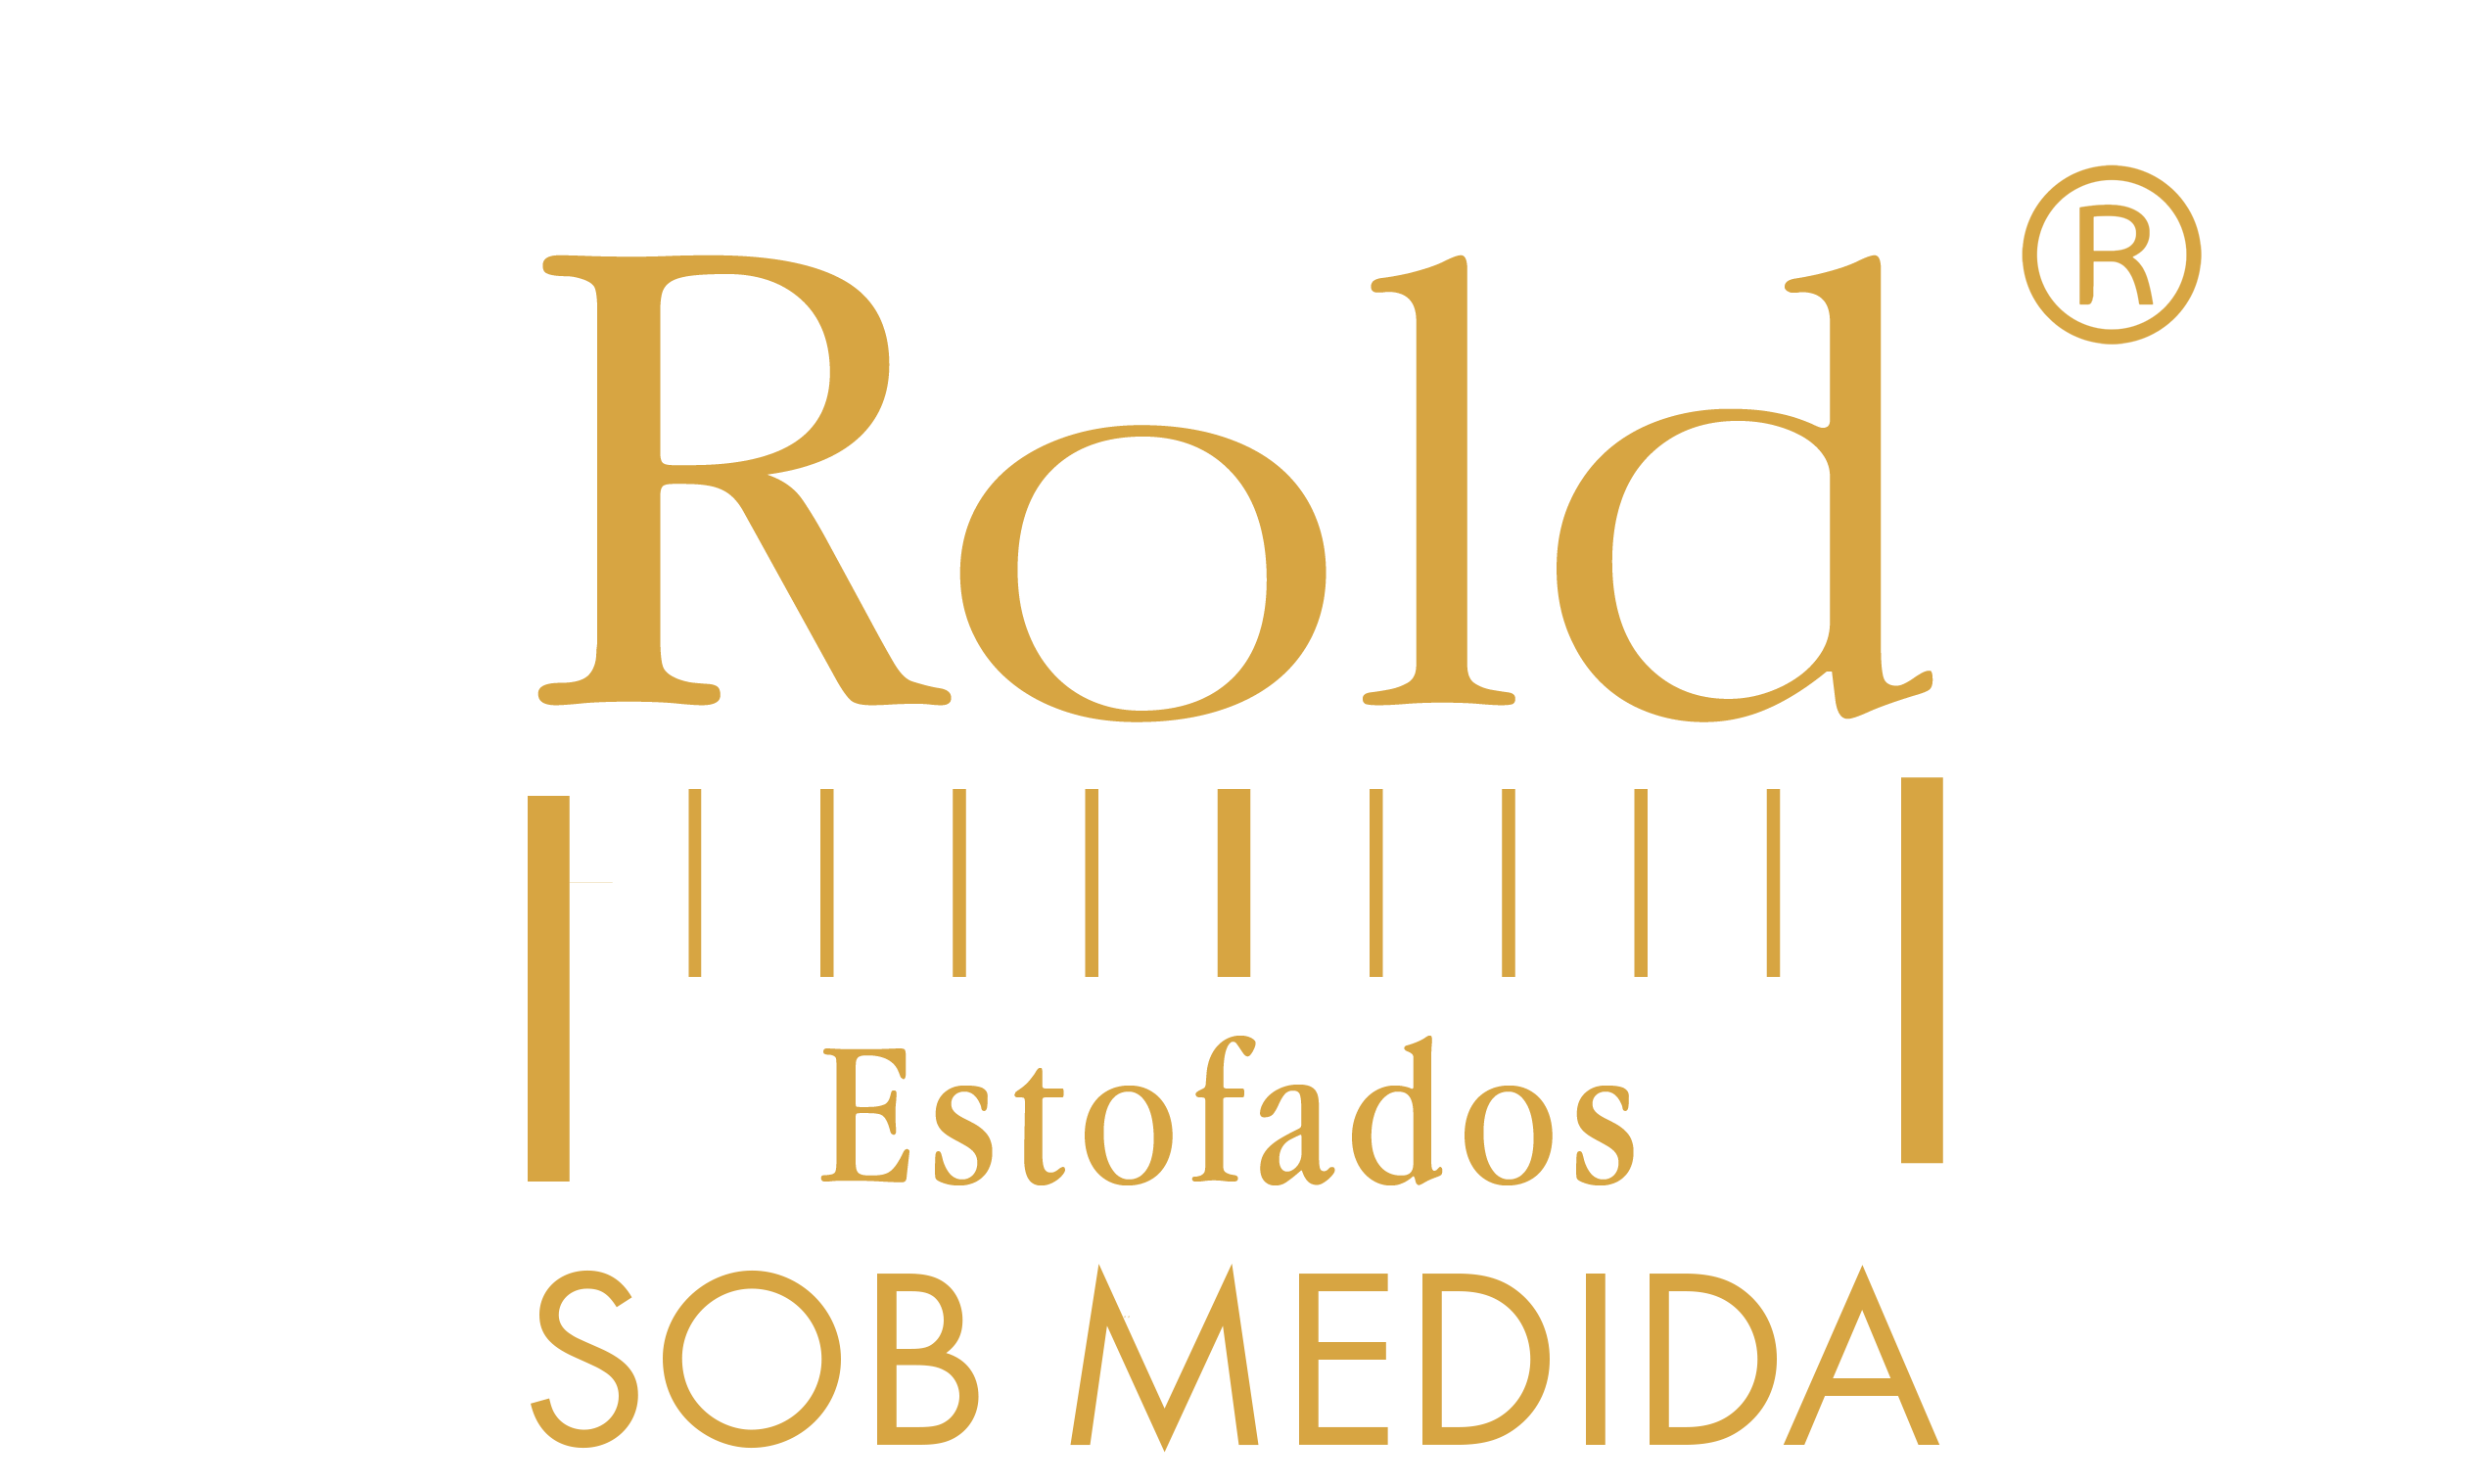 ROLD ESTOFADOS - SOB MEDIDA 